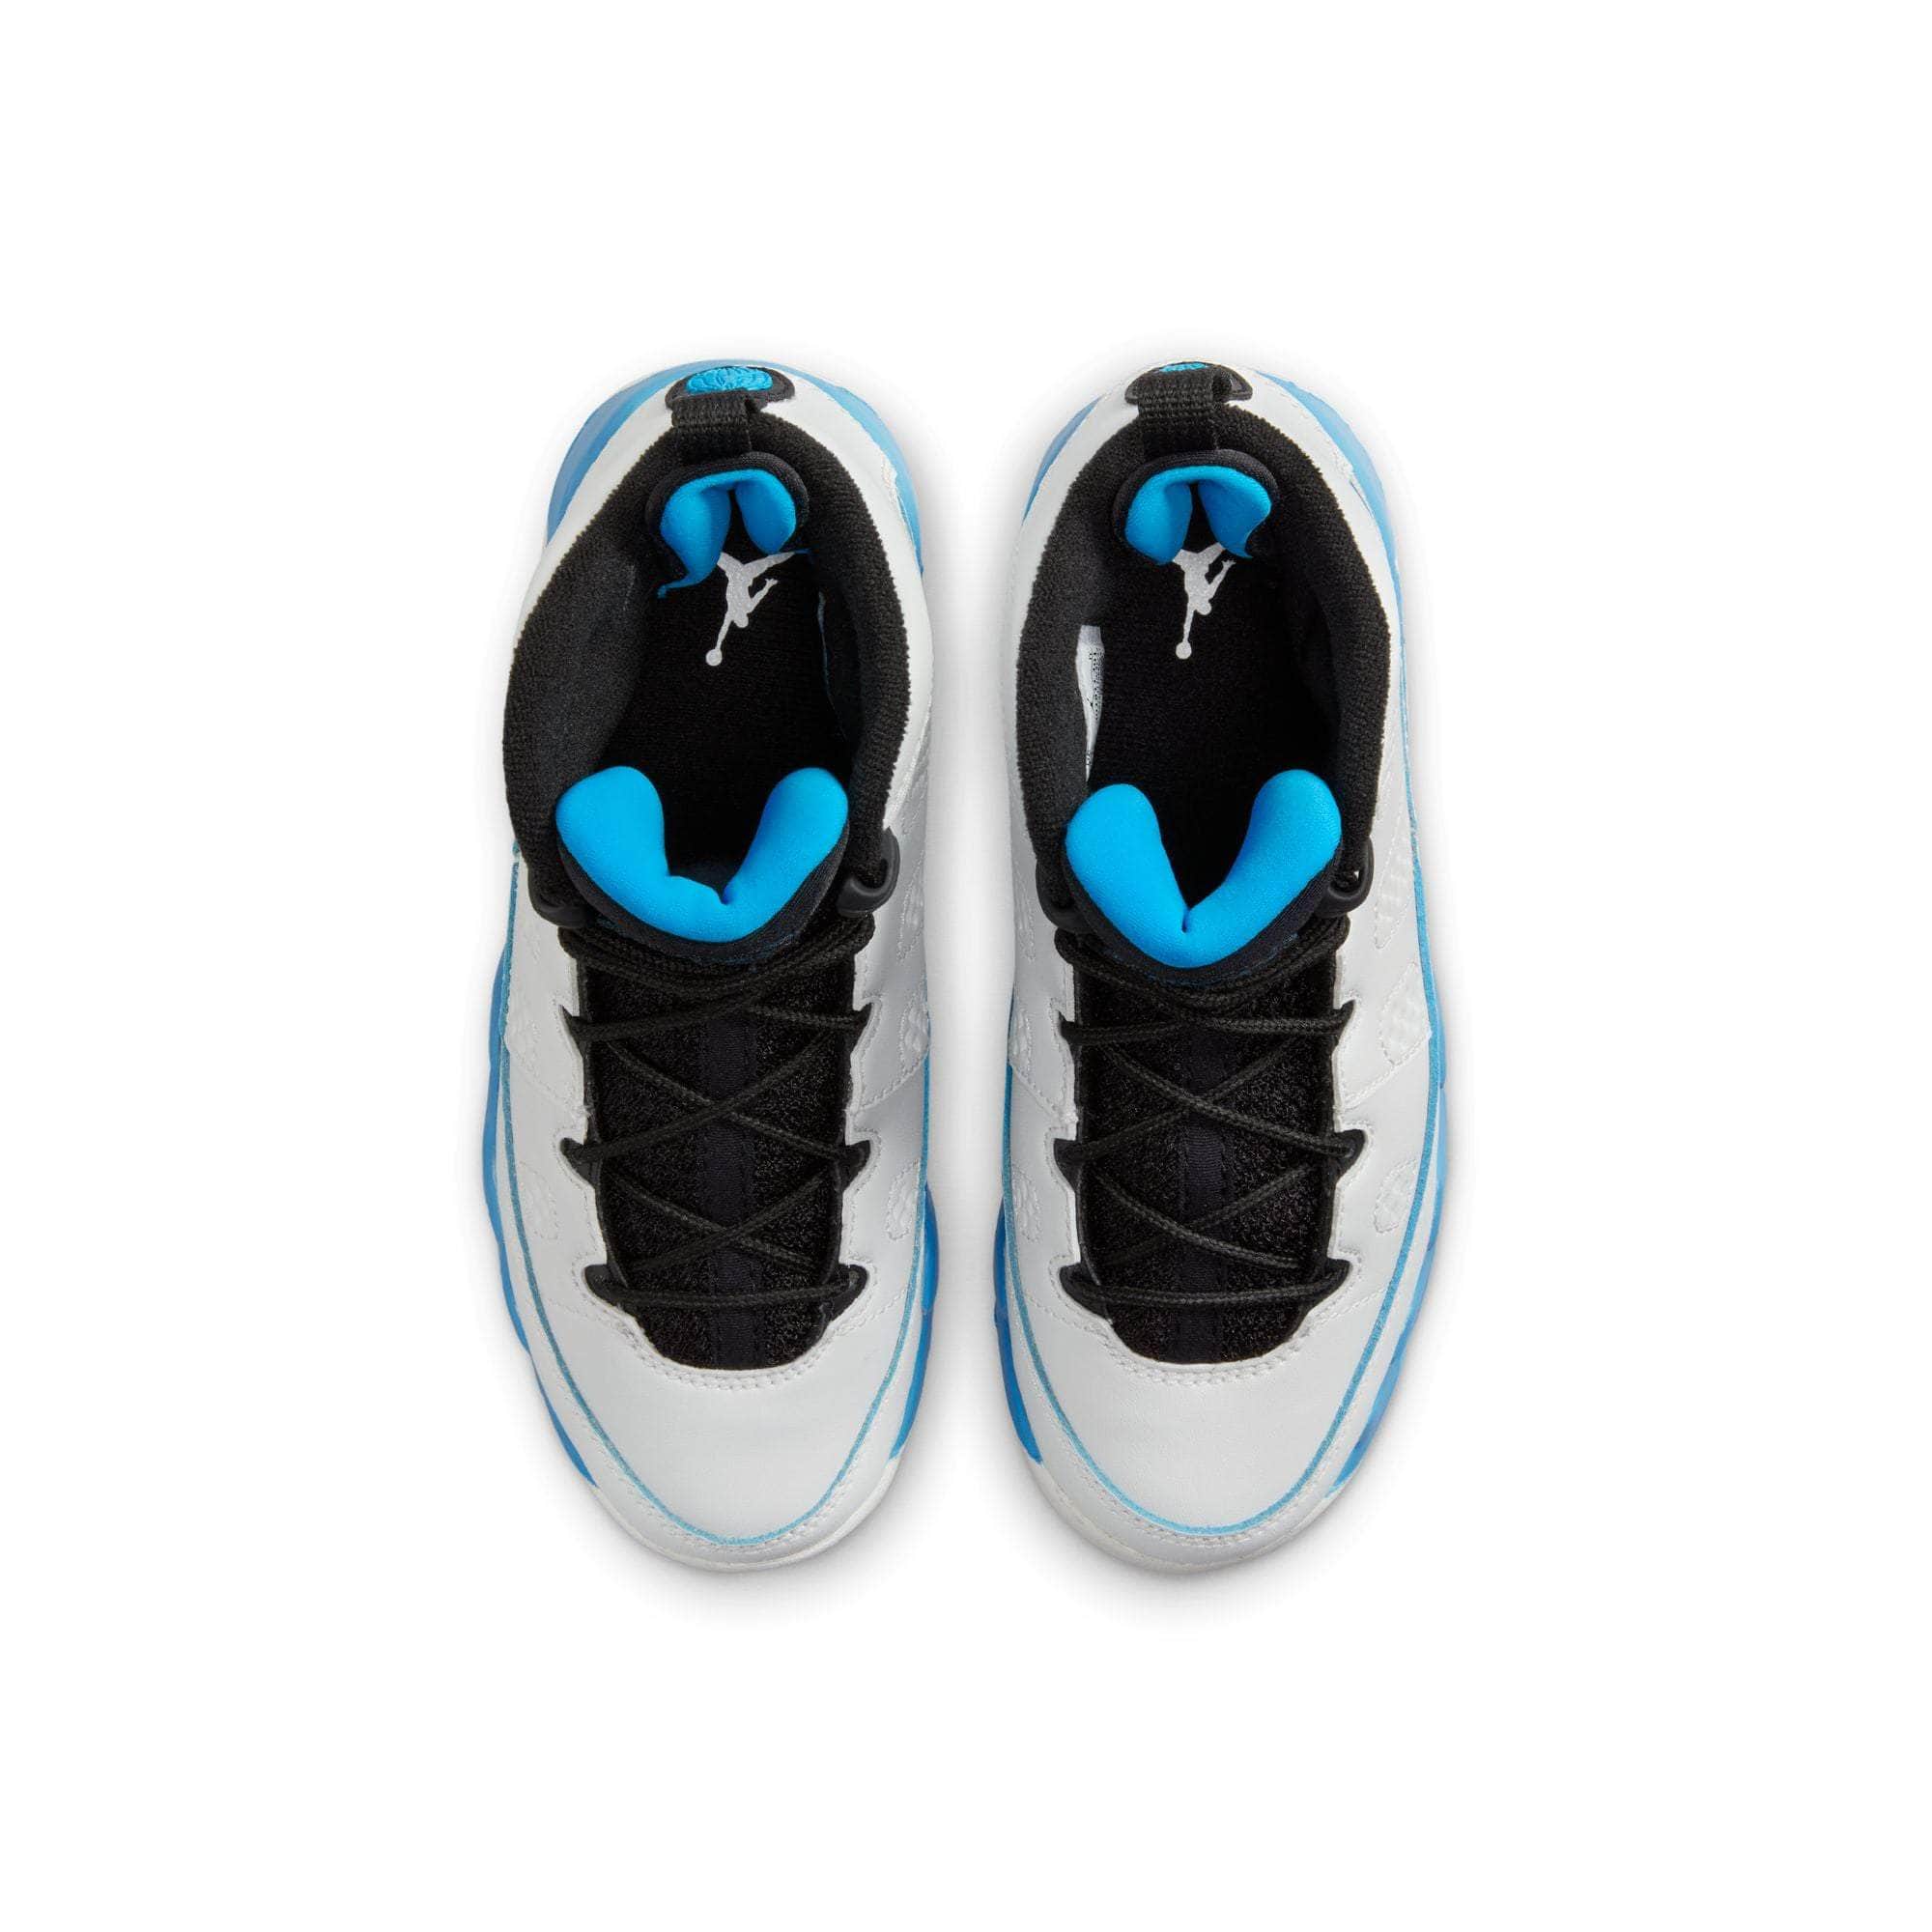 Air Jordan Footwear Air Jordan 9 Retro "Powder Blue" - Kid's PS